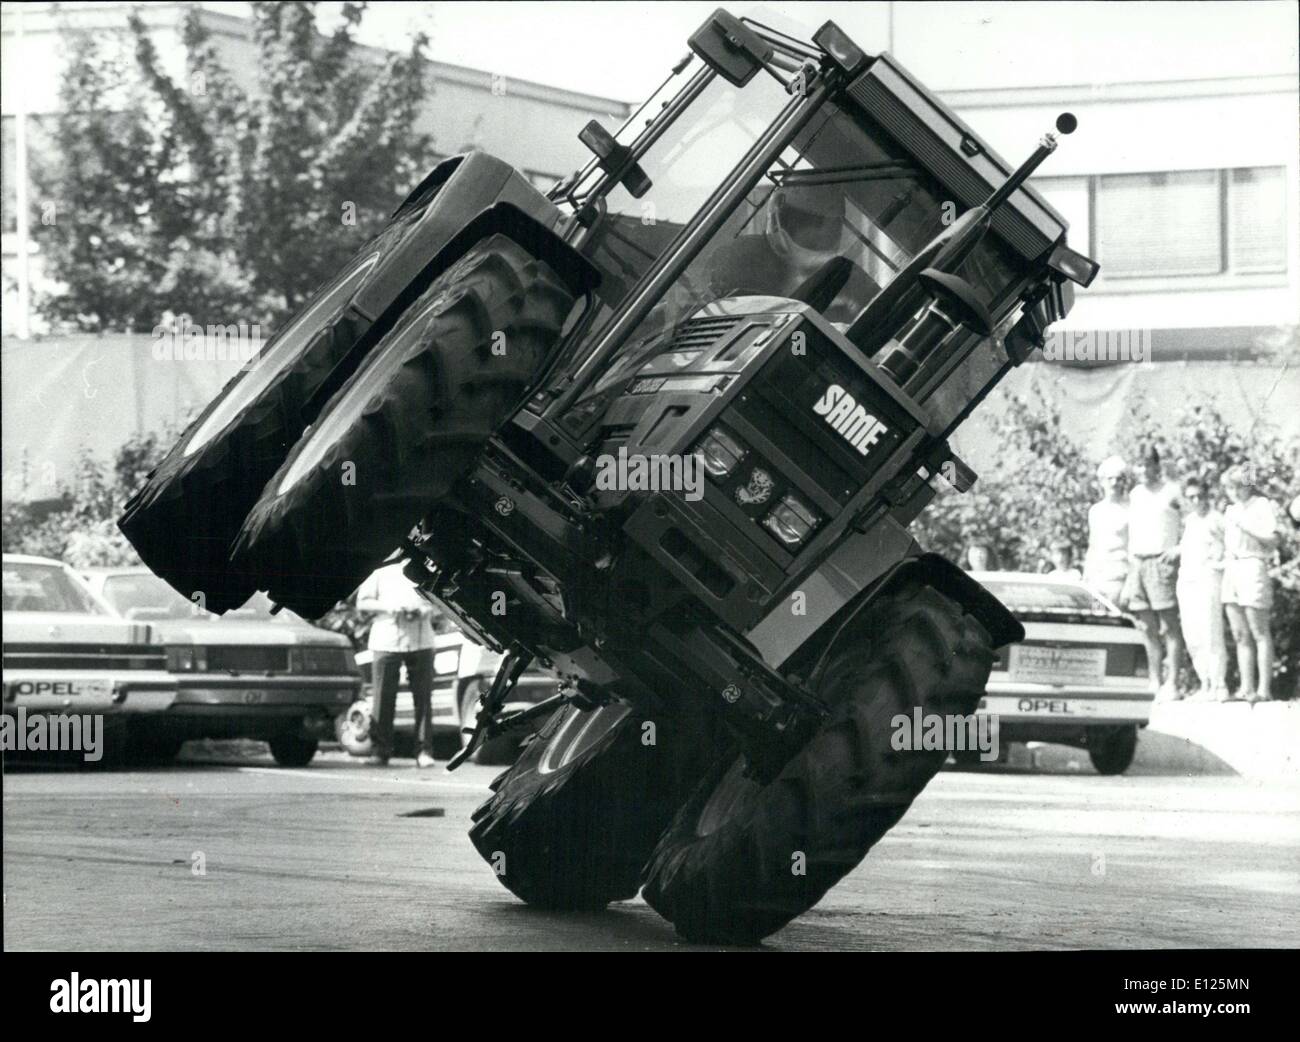 23. August 1988 - extravagante Traktor-Fahrstil: am Sonntag, den 14. August  eine Monster-Truck-Show in Zurich(Switzerland) produziert wurde. Foto zeigt  einen der Künstler der Show fahren, ein Traktor in einem extravaganten  Stil, die